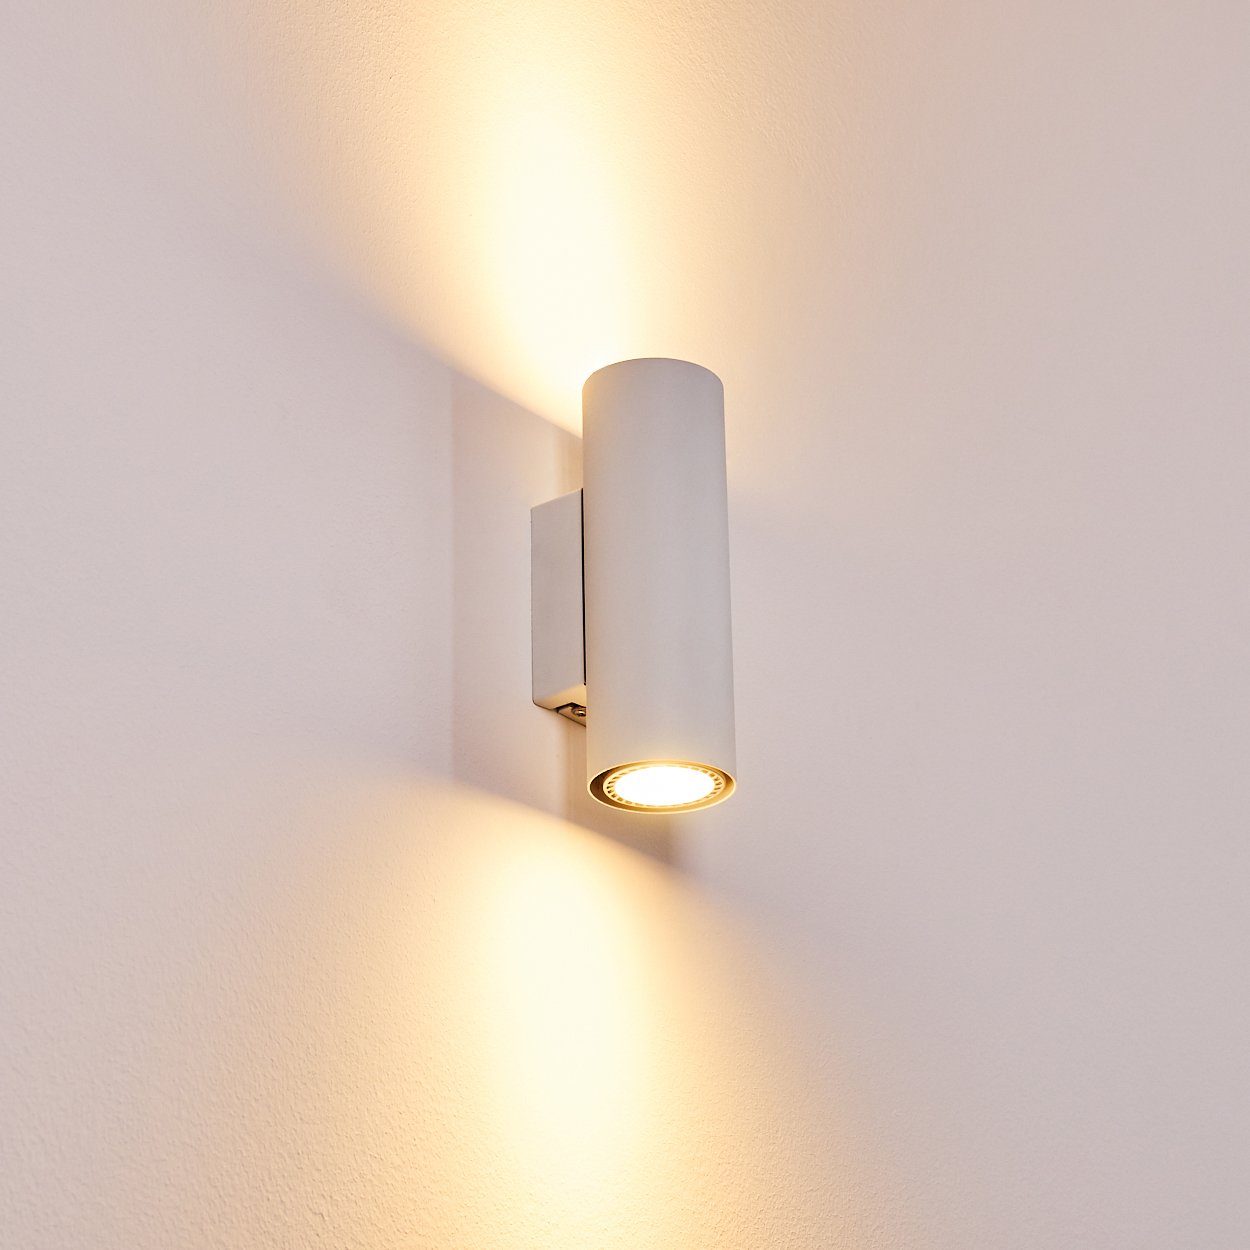 LED Wand Strahler Design Flur Dielen Lampe Wohn Schlaf Raum Leuchten verstellbar 